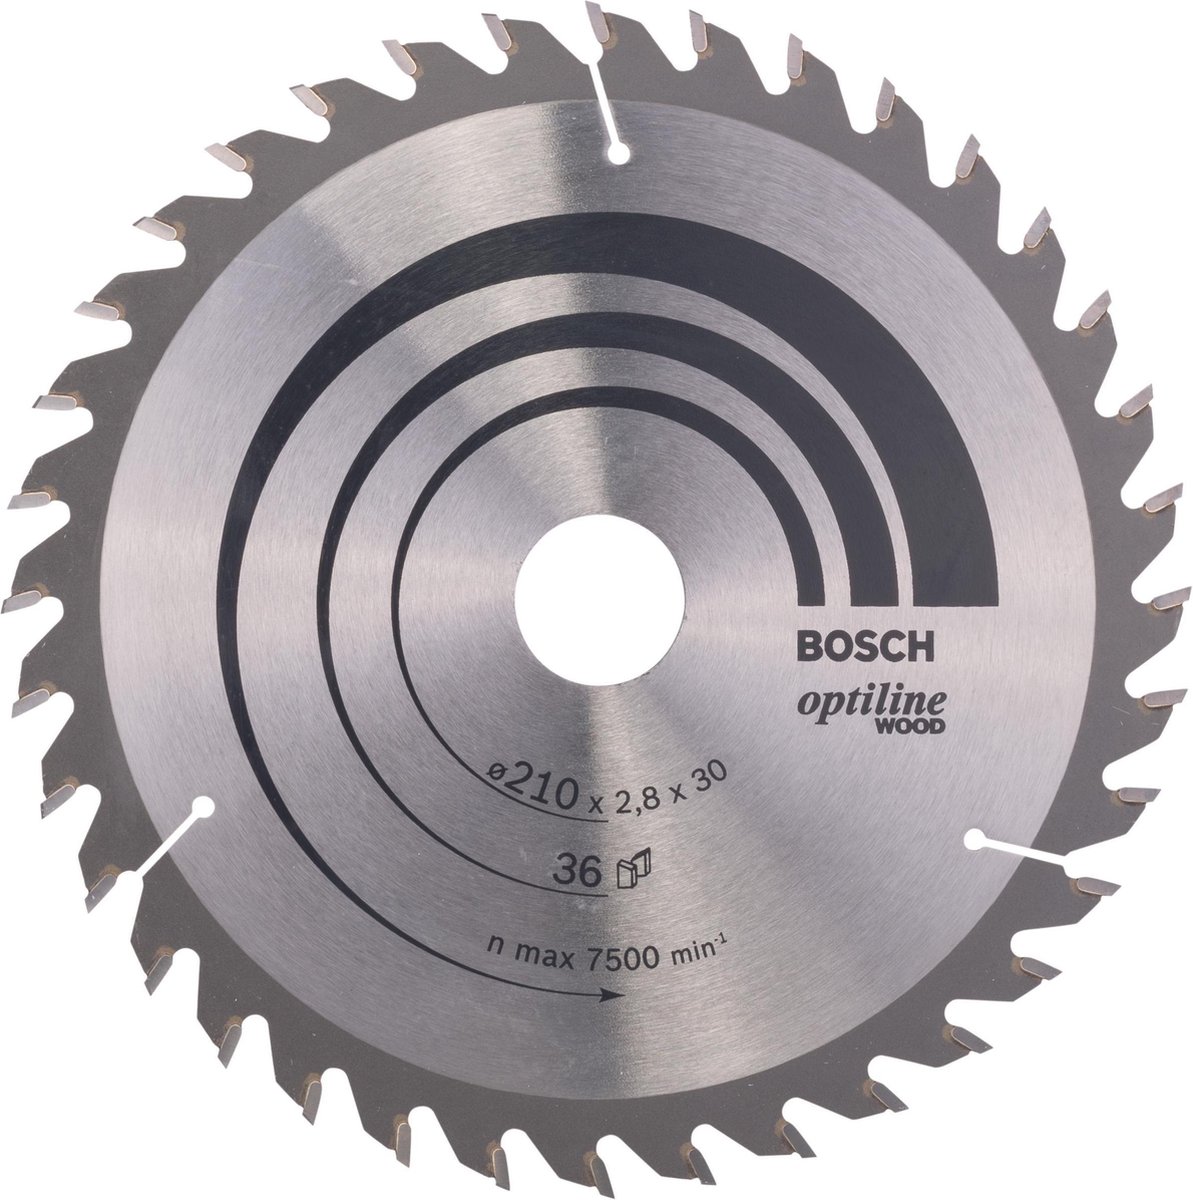 Bosch - Hoja de sierra circular Opilina de madera para sierras circulares a mano. 2